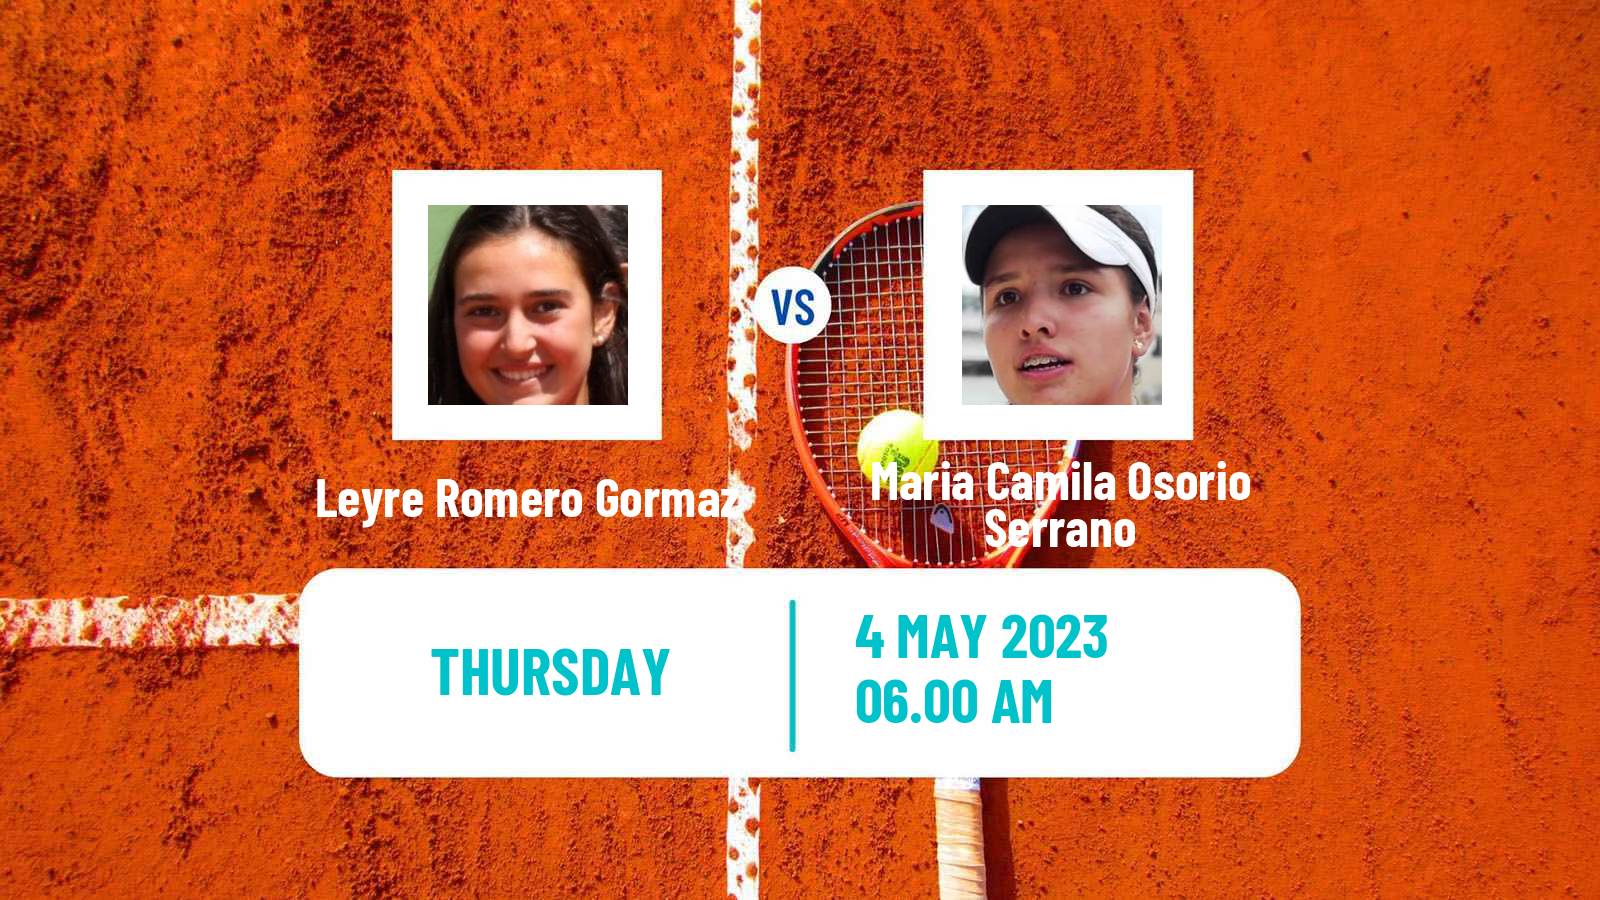 Tennis ATP Challenger Leyre Romero Gormaz - Maria Camila Osorio Serrano